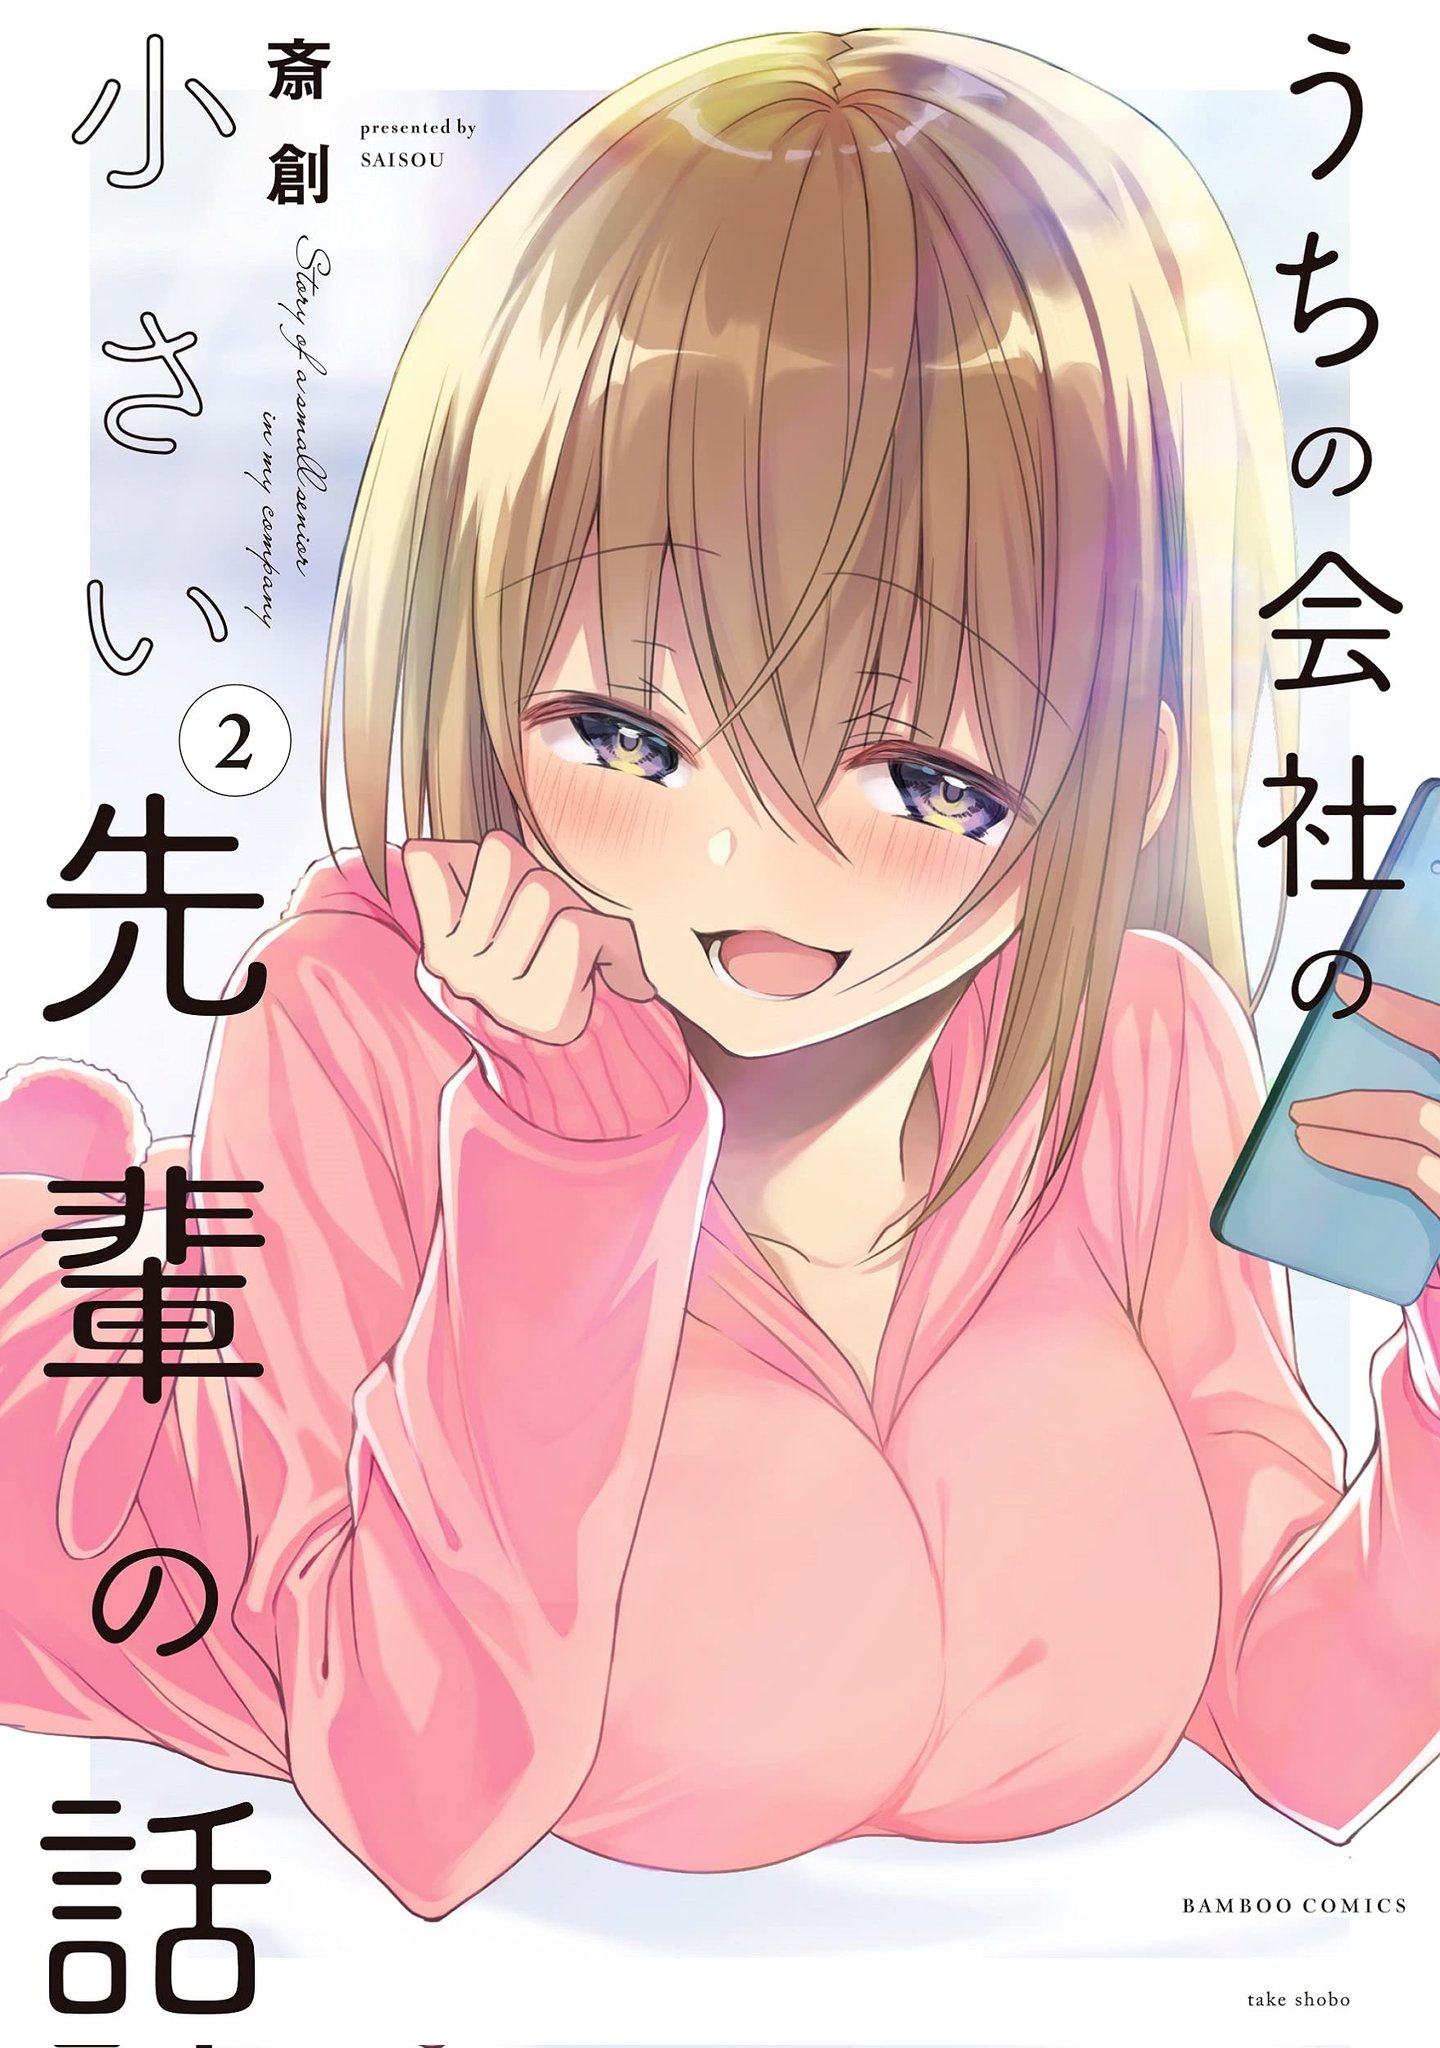 El manga Uchi no Kaisha no Chiisai Senpai no Hanashi supero las 600 mil copias